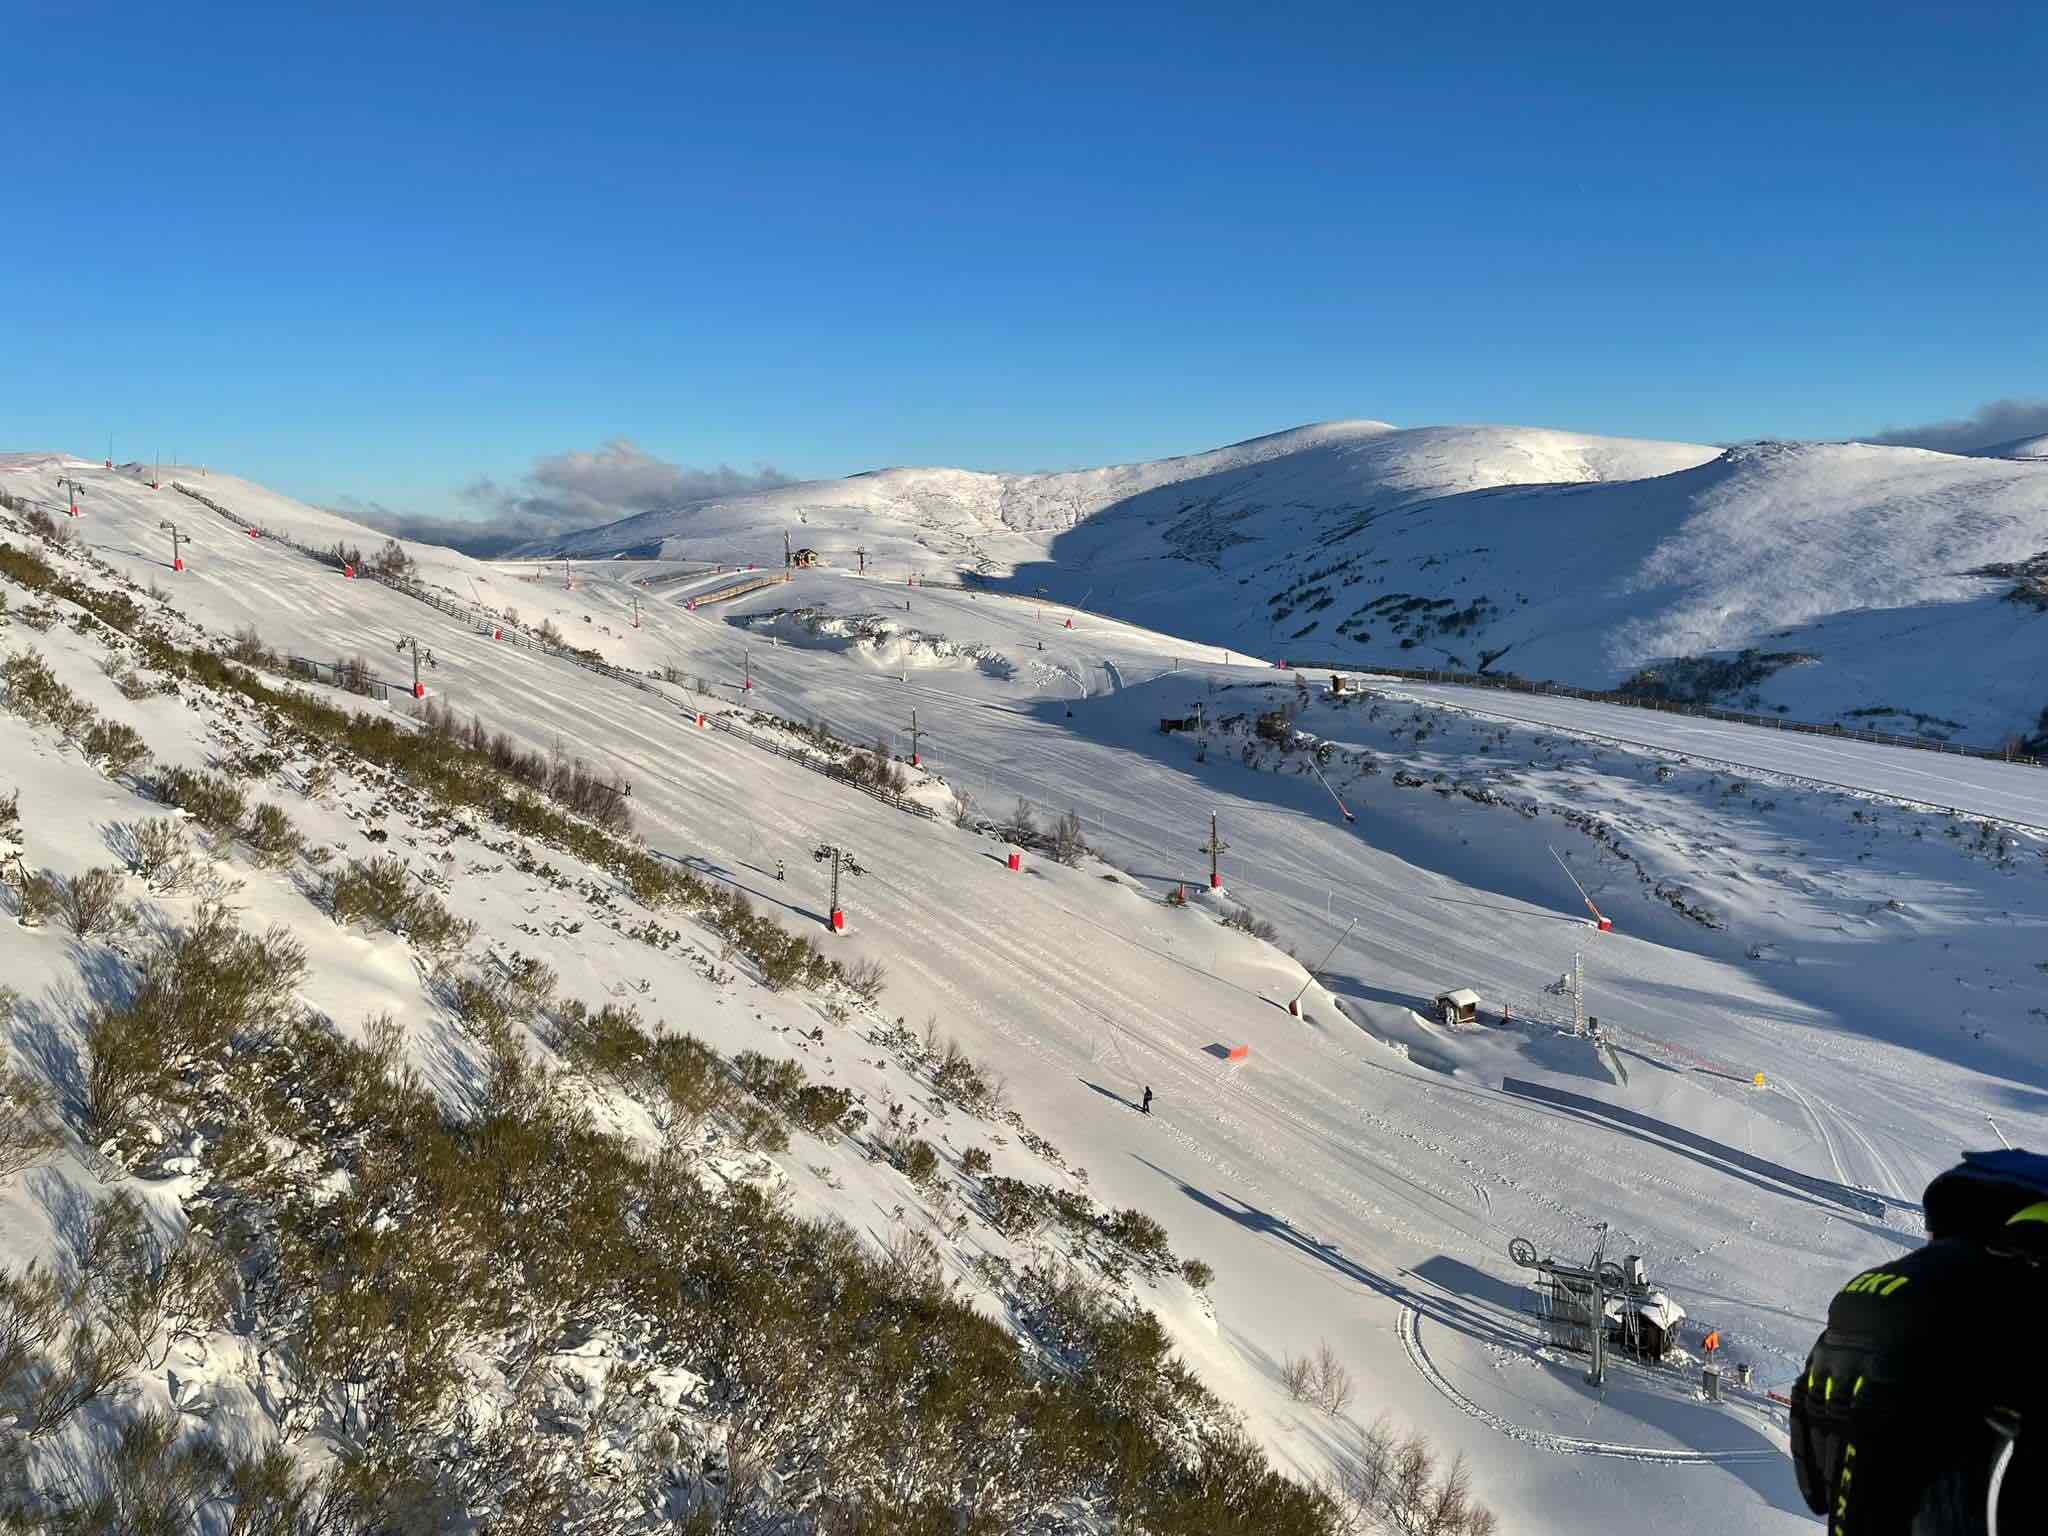 Empieza la licitación para modernizar la estación de esquí Valle Laciana- Leitariegos